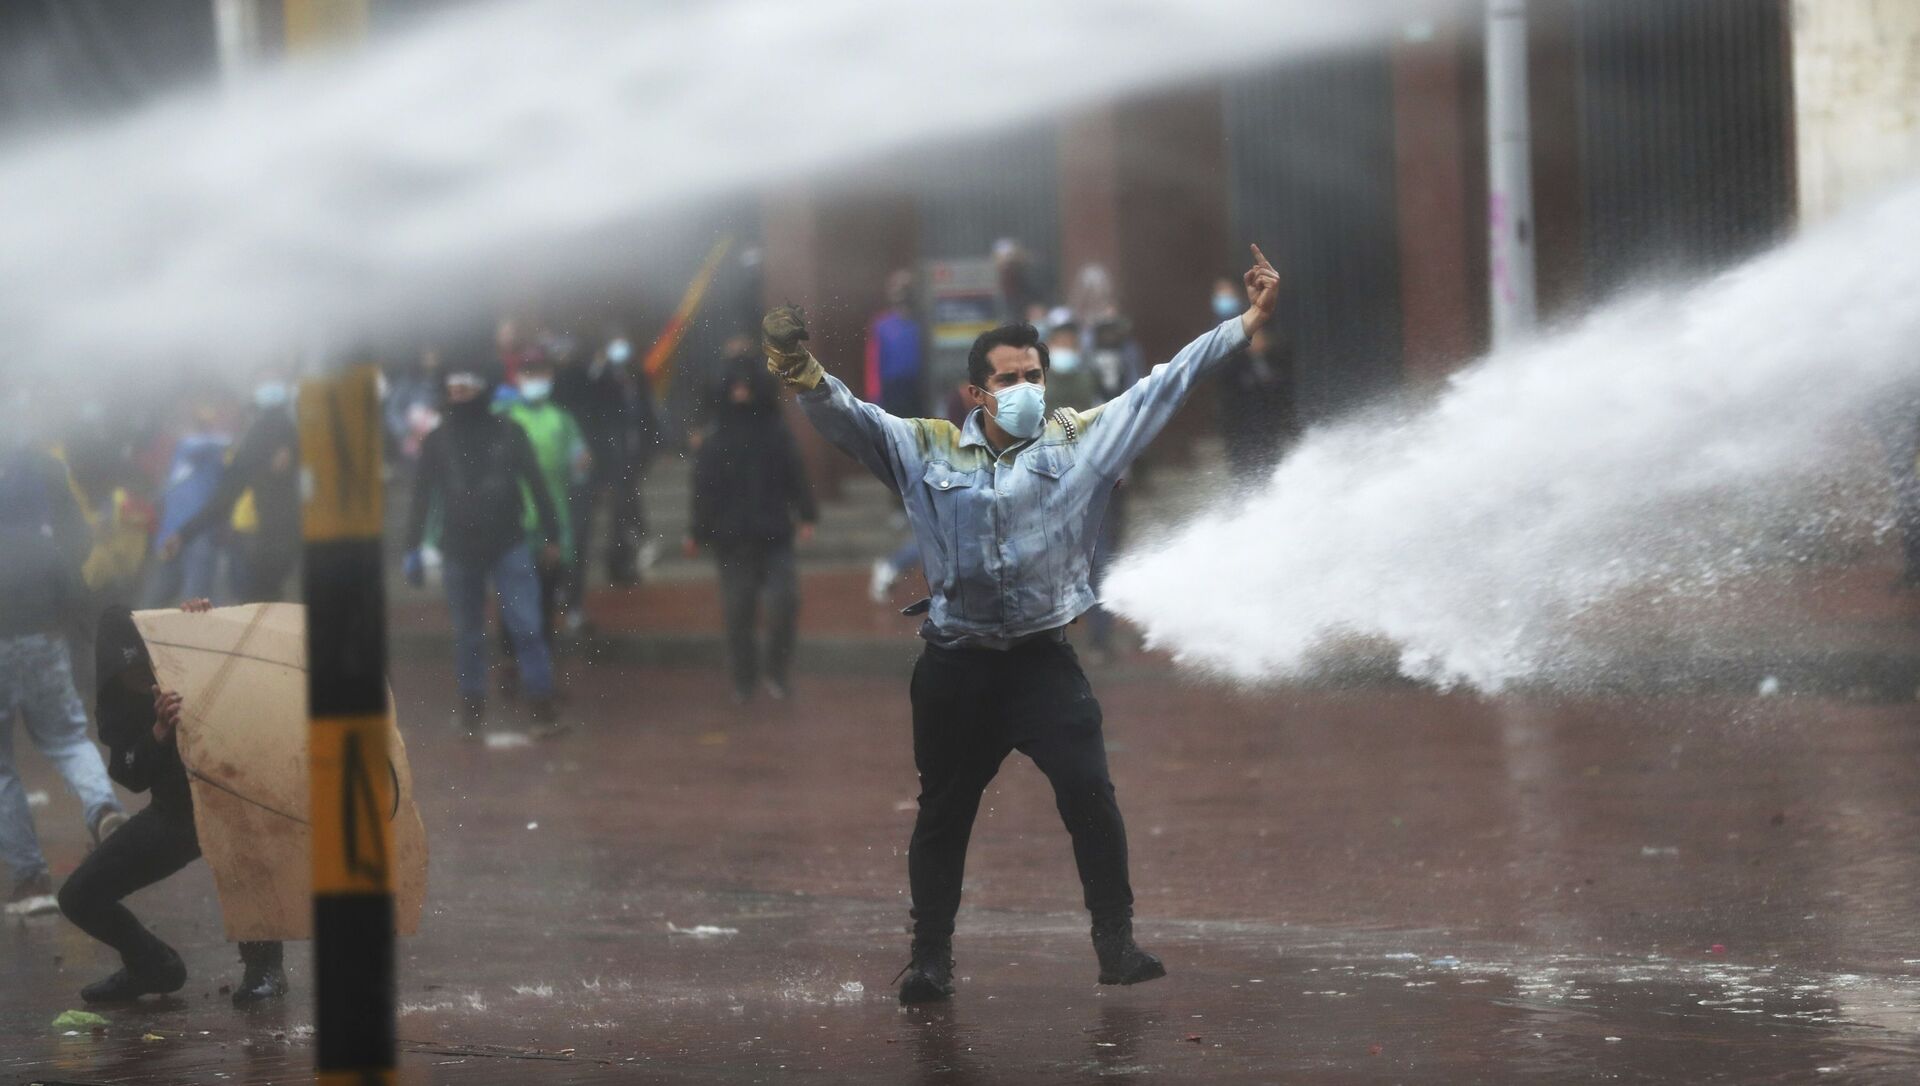 Полиция разгоняет демонстрантов водометами во время антиправительственного протеста в Боготе, Колумбия - Sputnik 日本, 1920, 12.05.2021